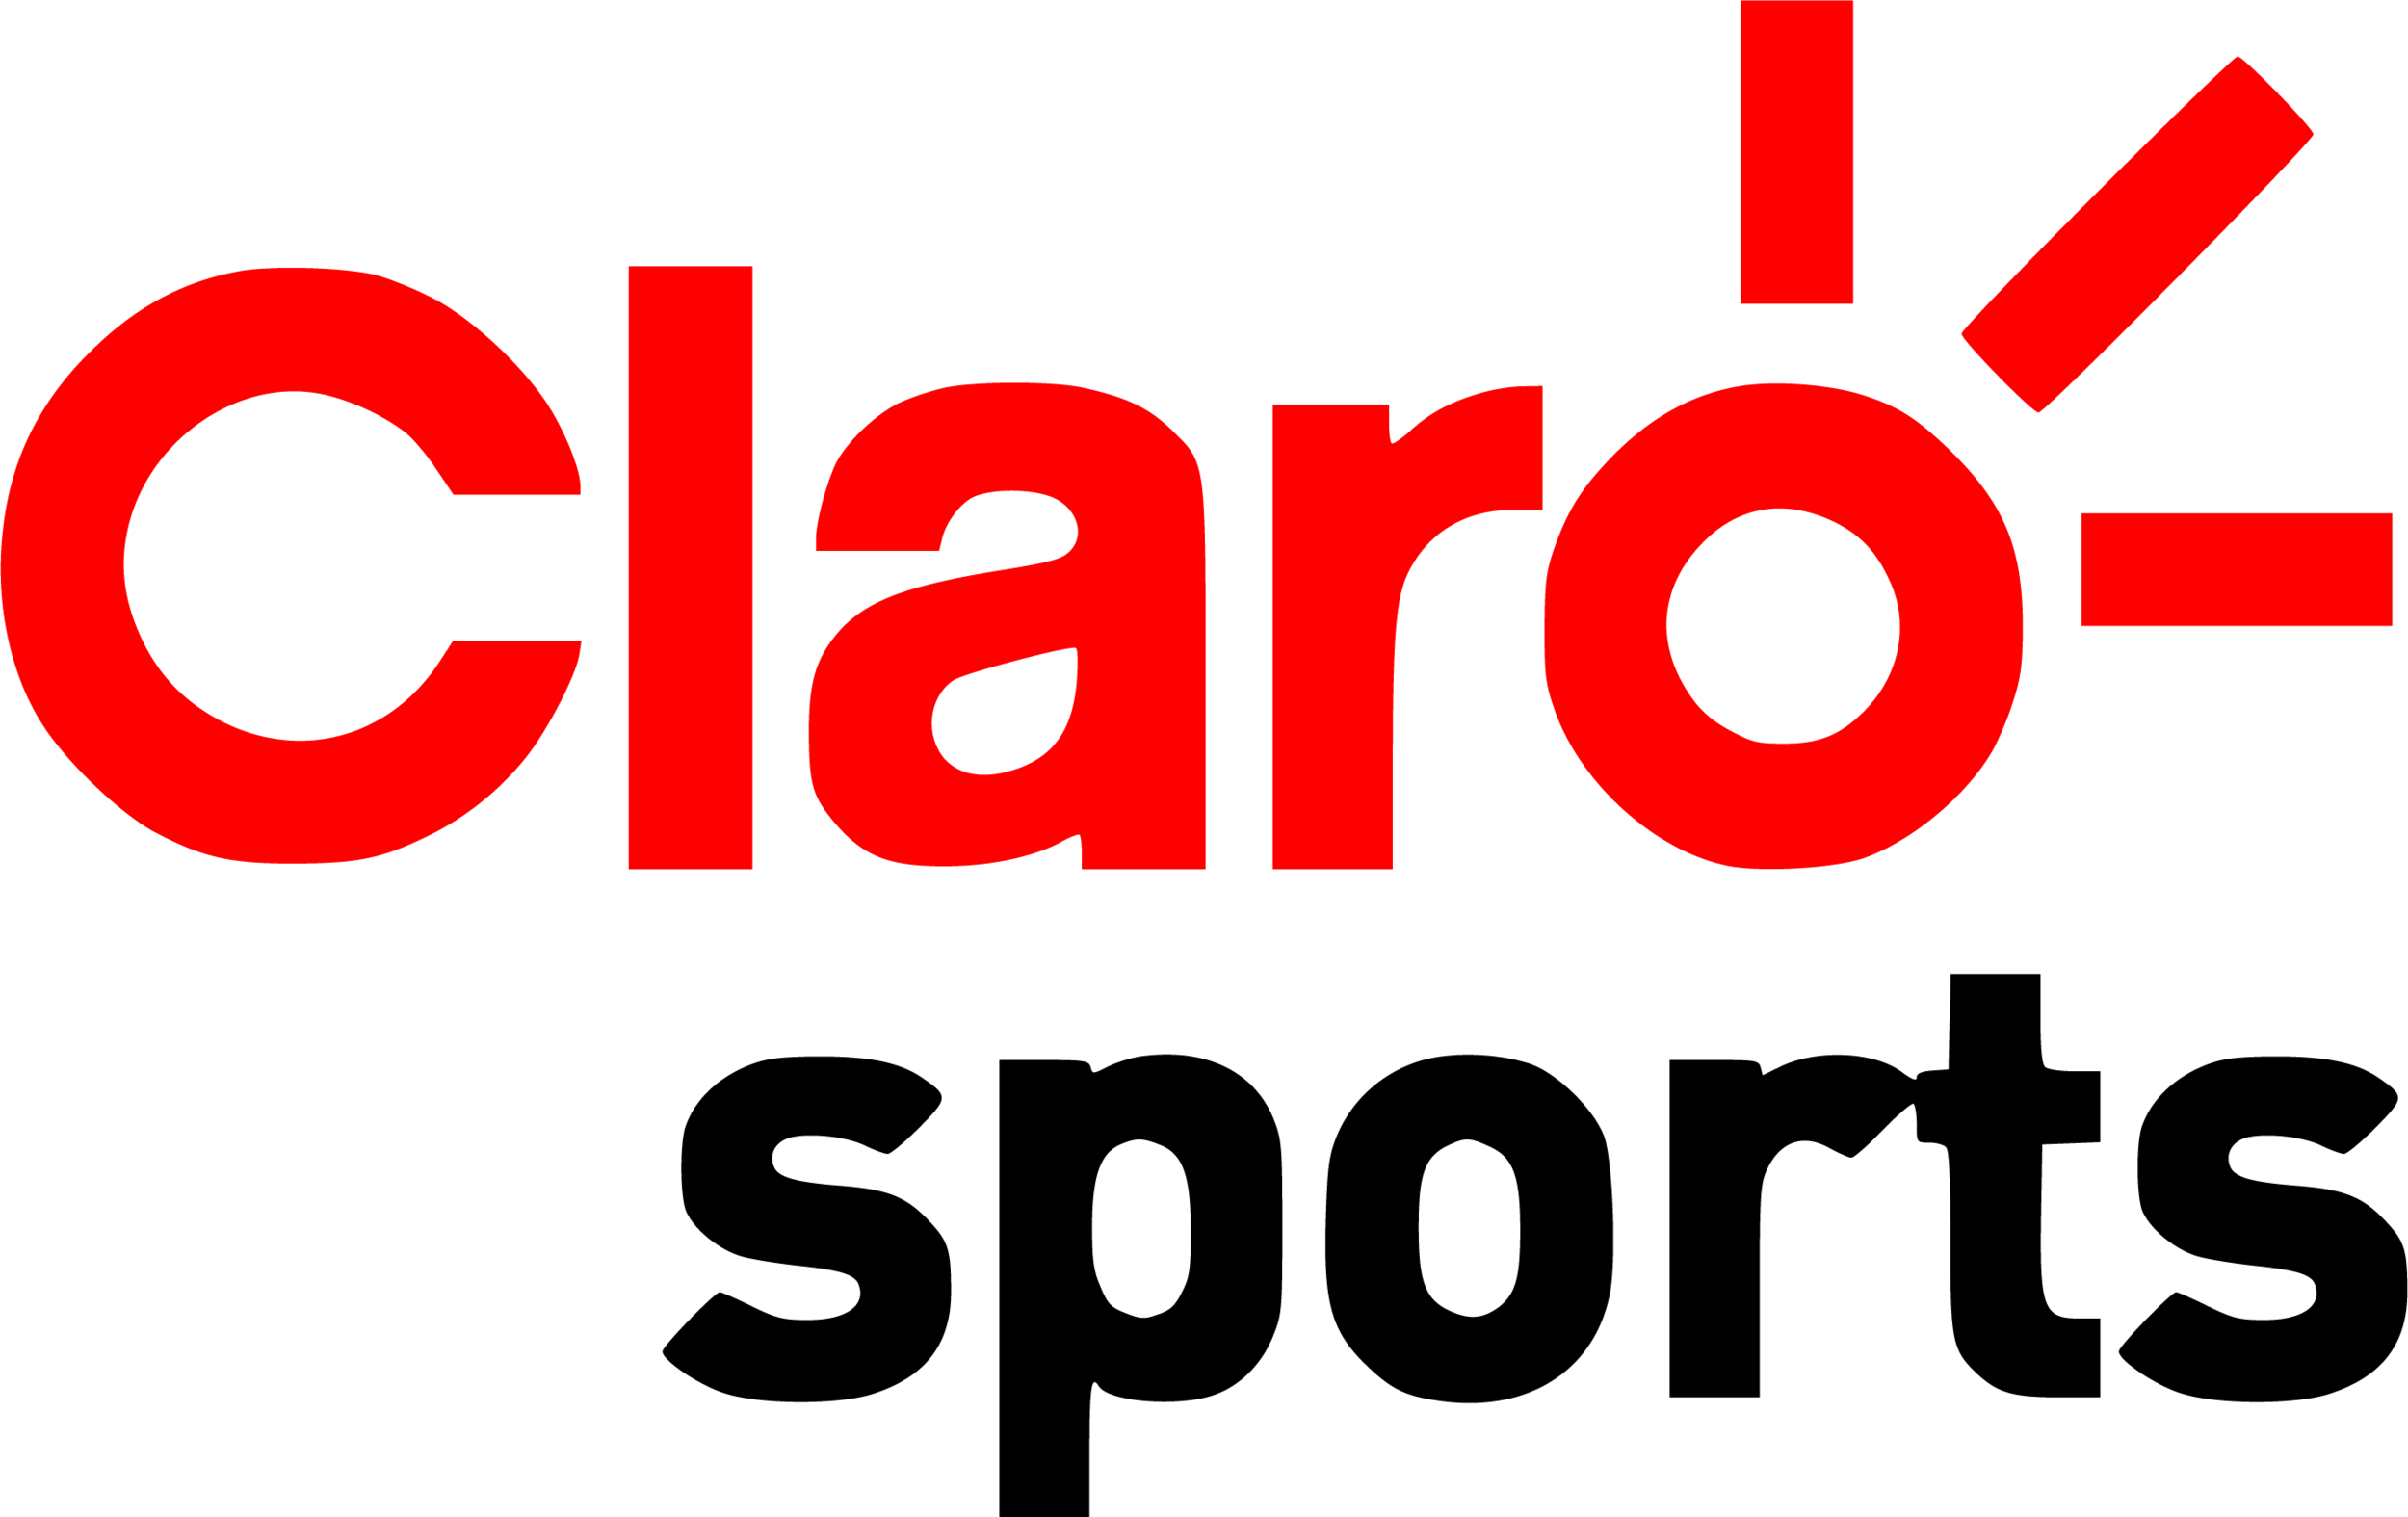 Claro_Sports_logo.png